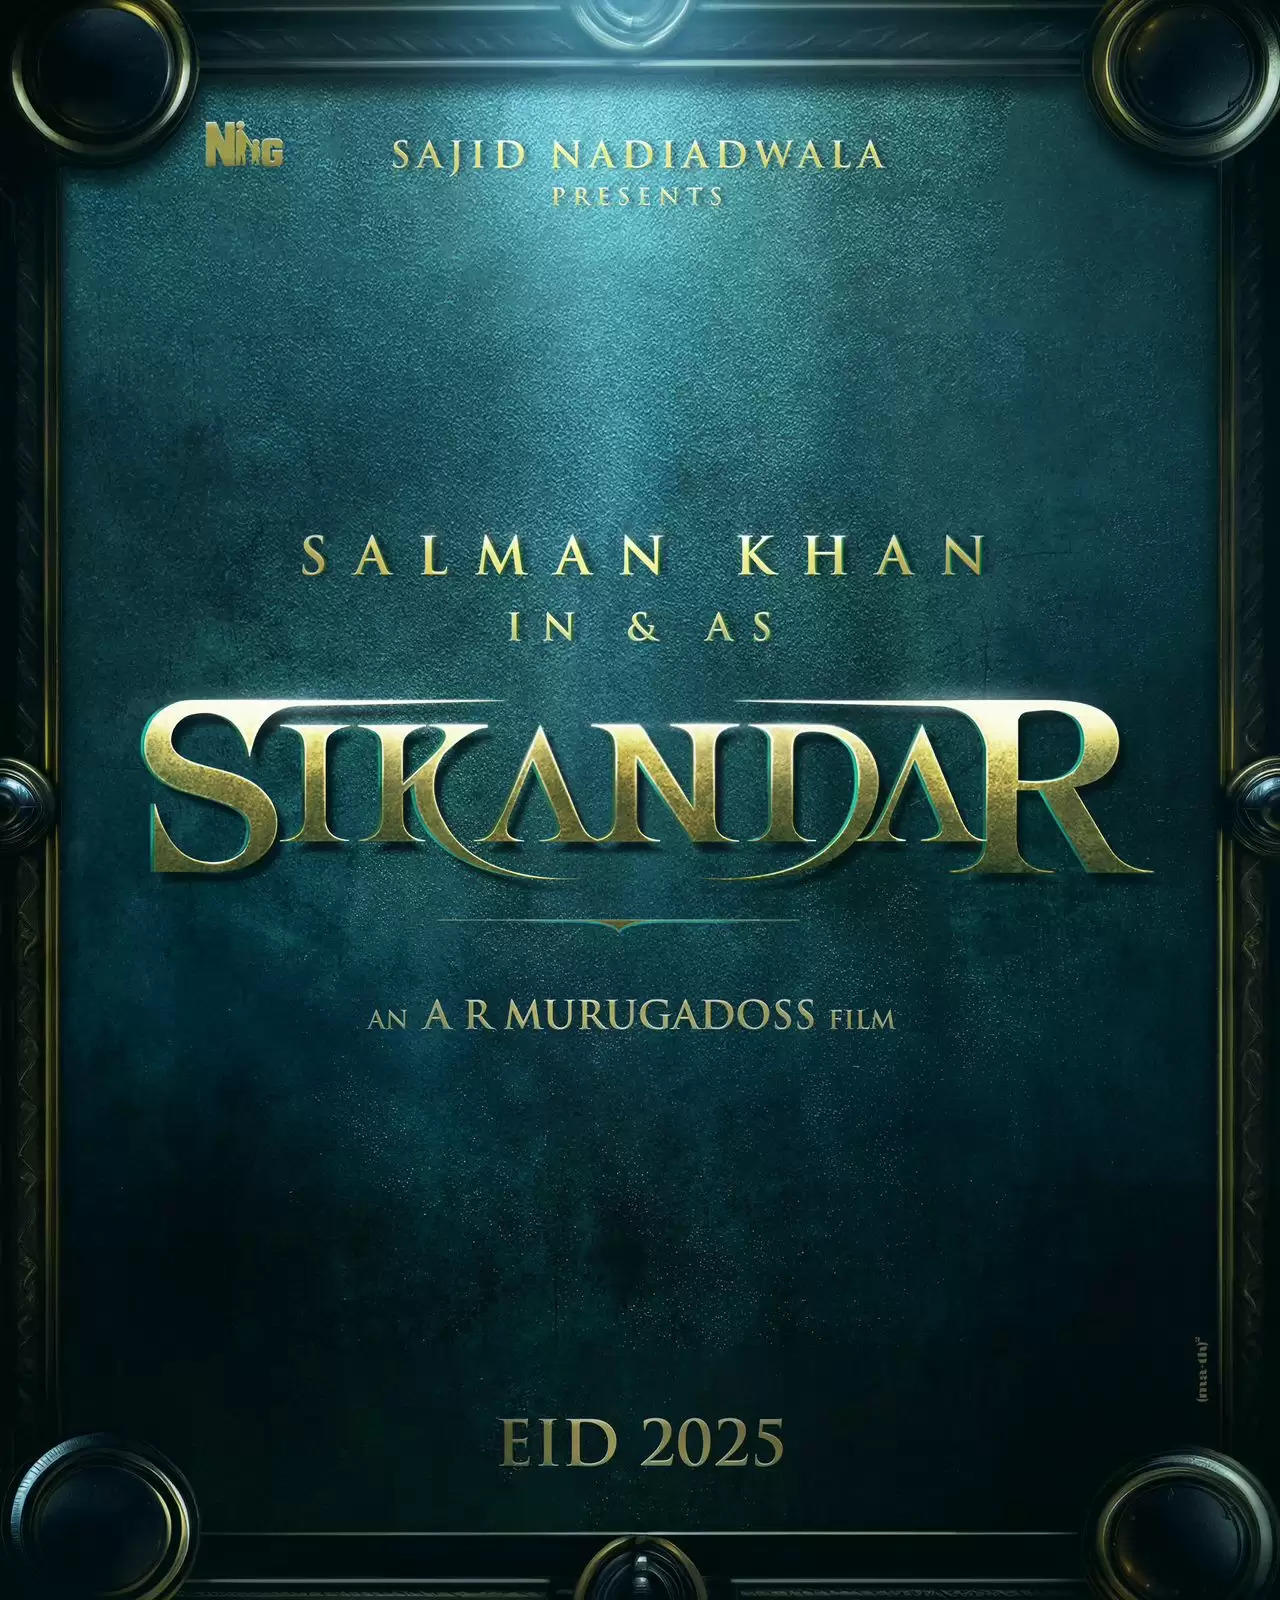 सलमान खान ने फैंस को दी ईदी, साजिद नाडियाडवाला और ए. आर.मुरुगाडोस संग मिल की अपनी ईद 2025 की रिलीज के नाम की घोषणा